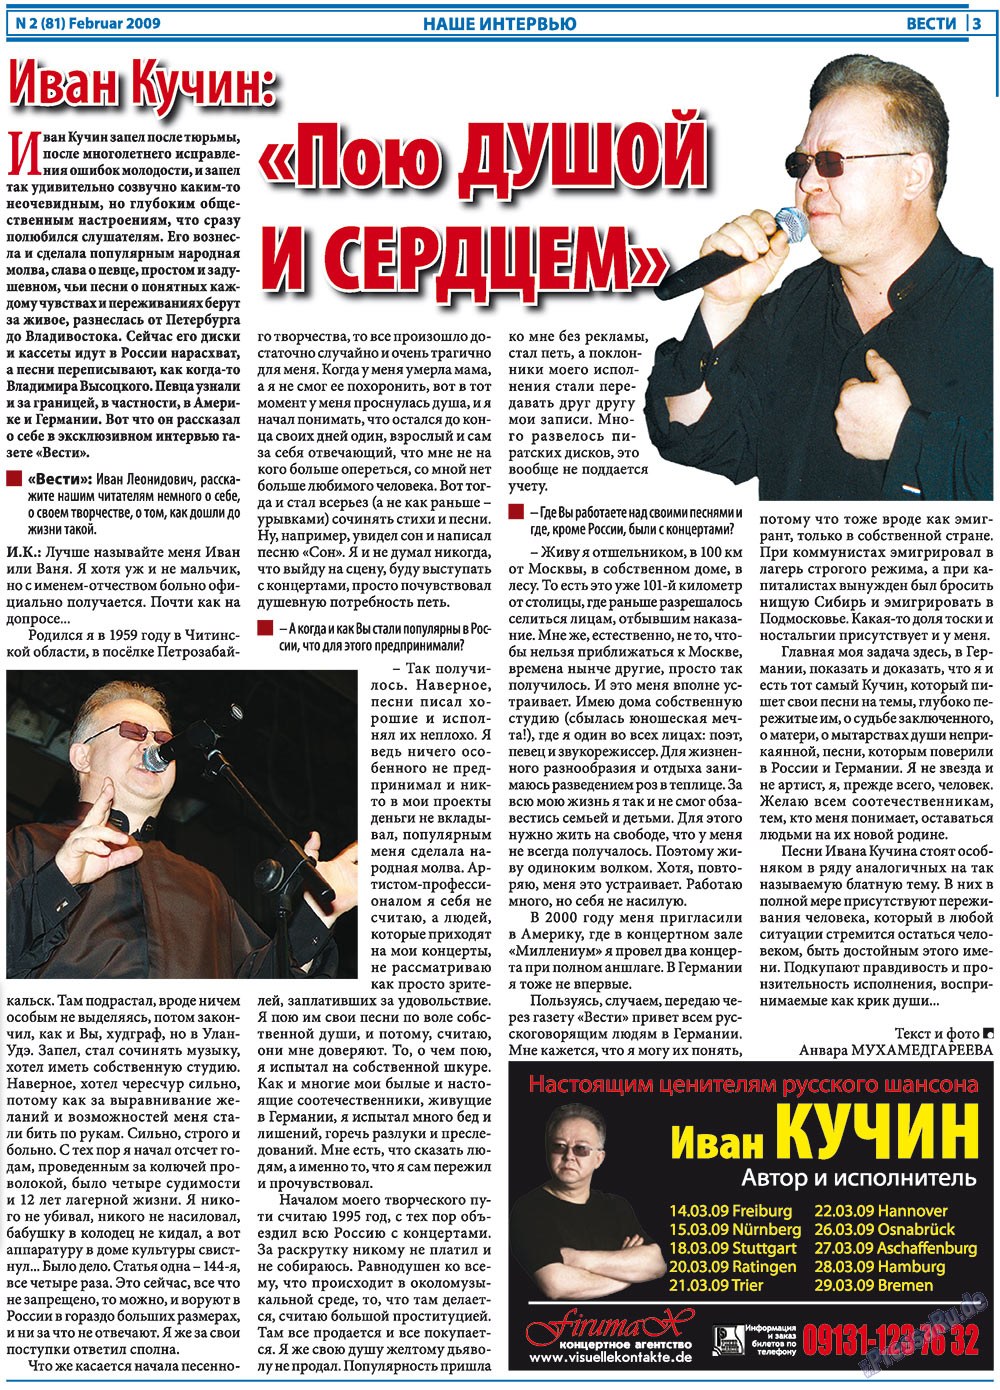 Вести, газета. 2009 №2 стр.3